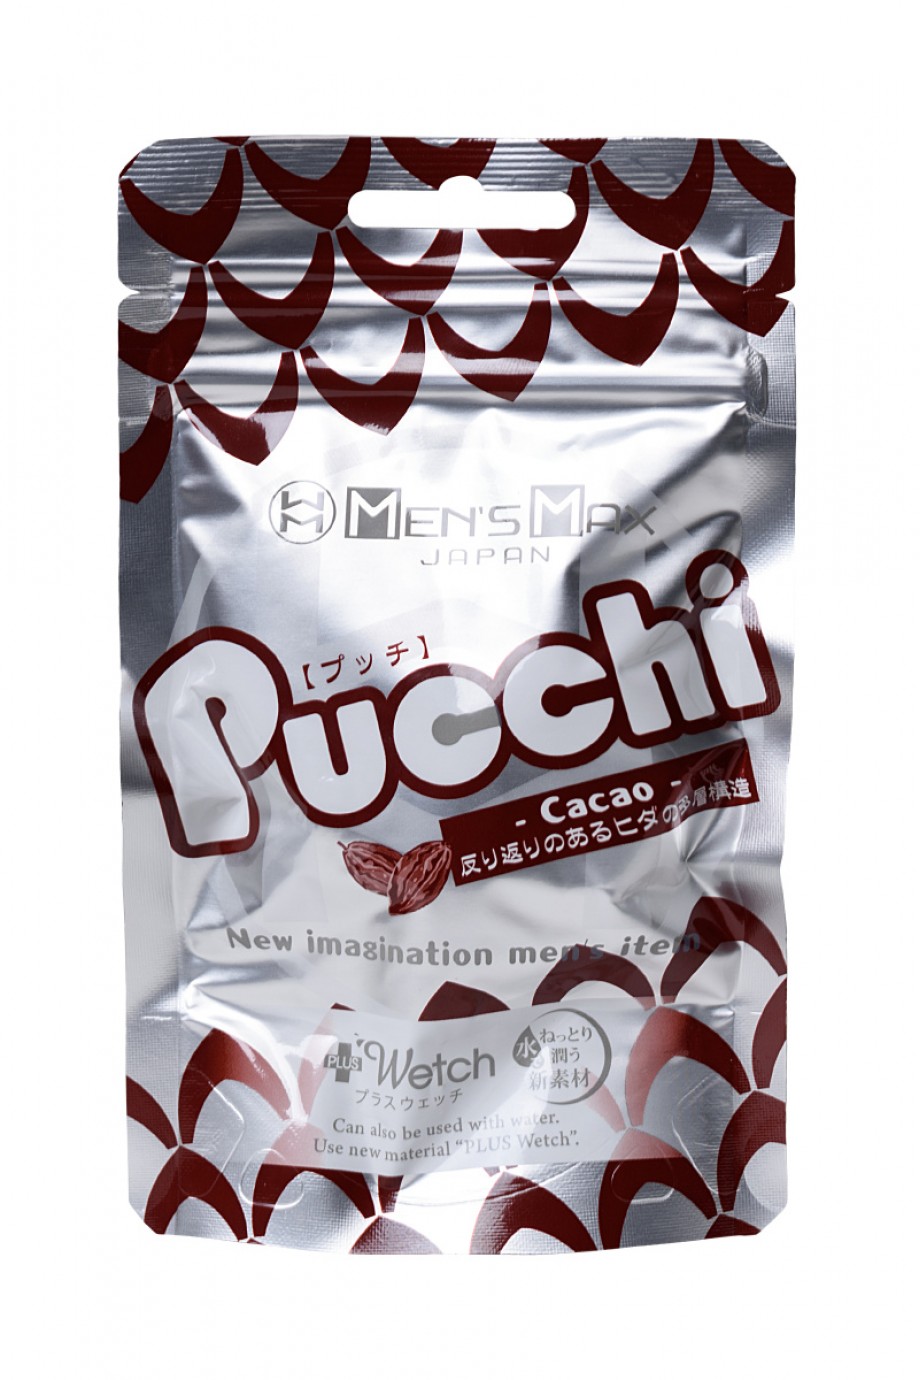 MensMax Pucchi Cacao